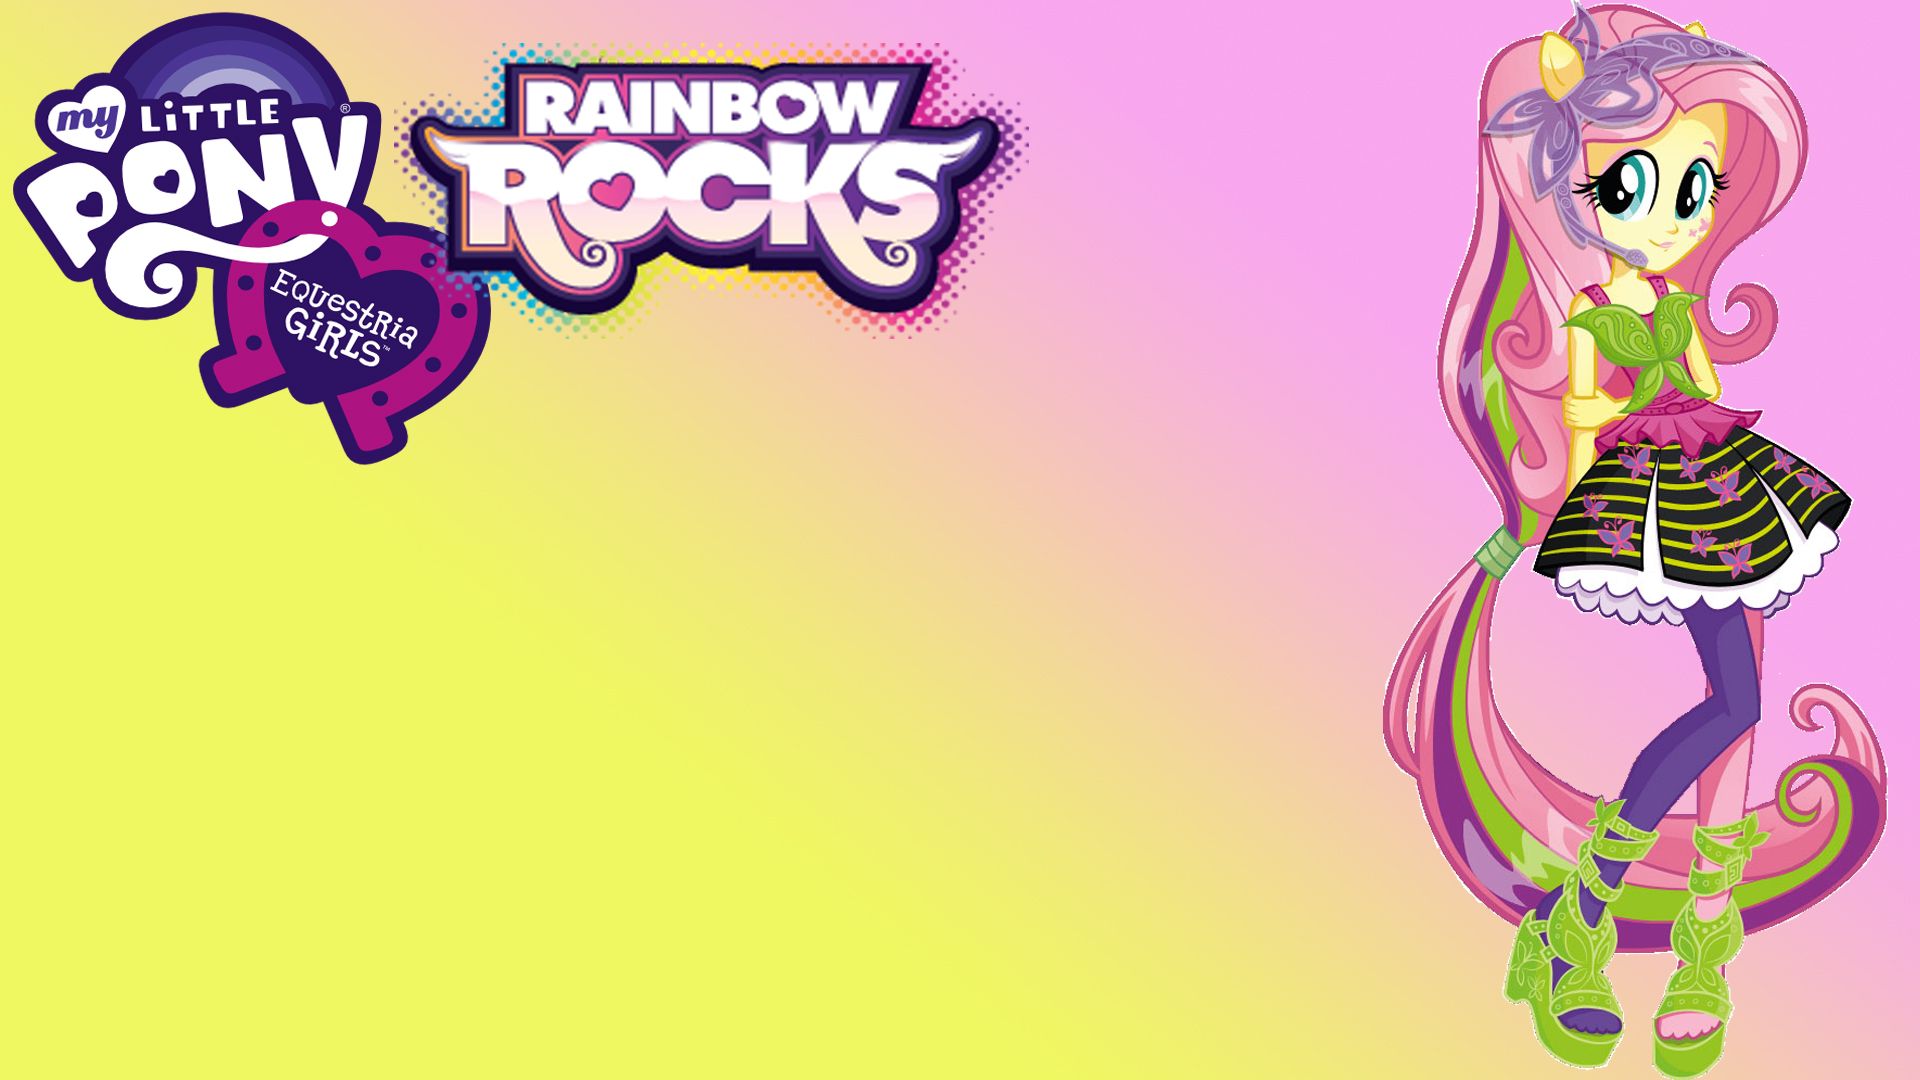 Equestria Girls Rainbow Rocks Fluttershy Wallpaper. Rainbow rocks, Fluttershy, Equestria girls